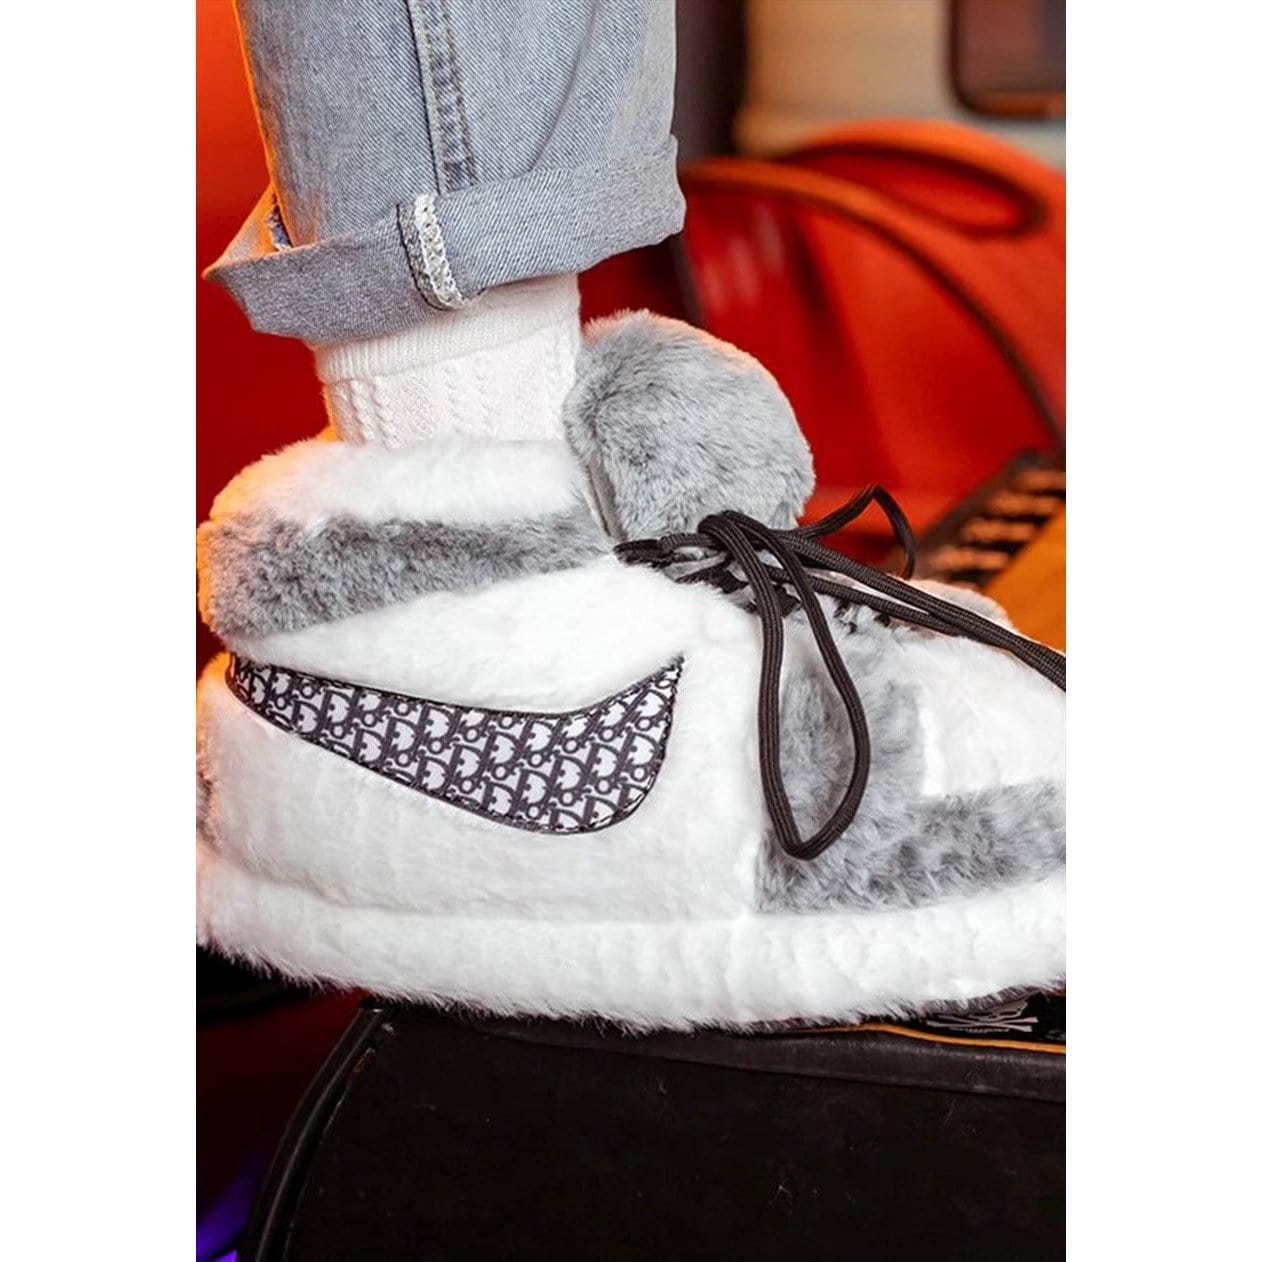 Slip Kickz  Slippers Dior Inspired Jordan Novelty Sneaker Slippers